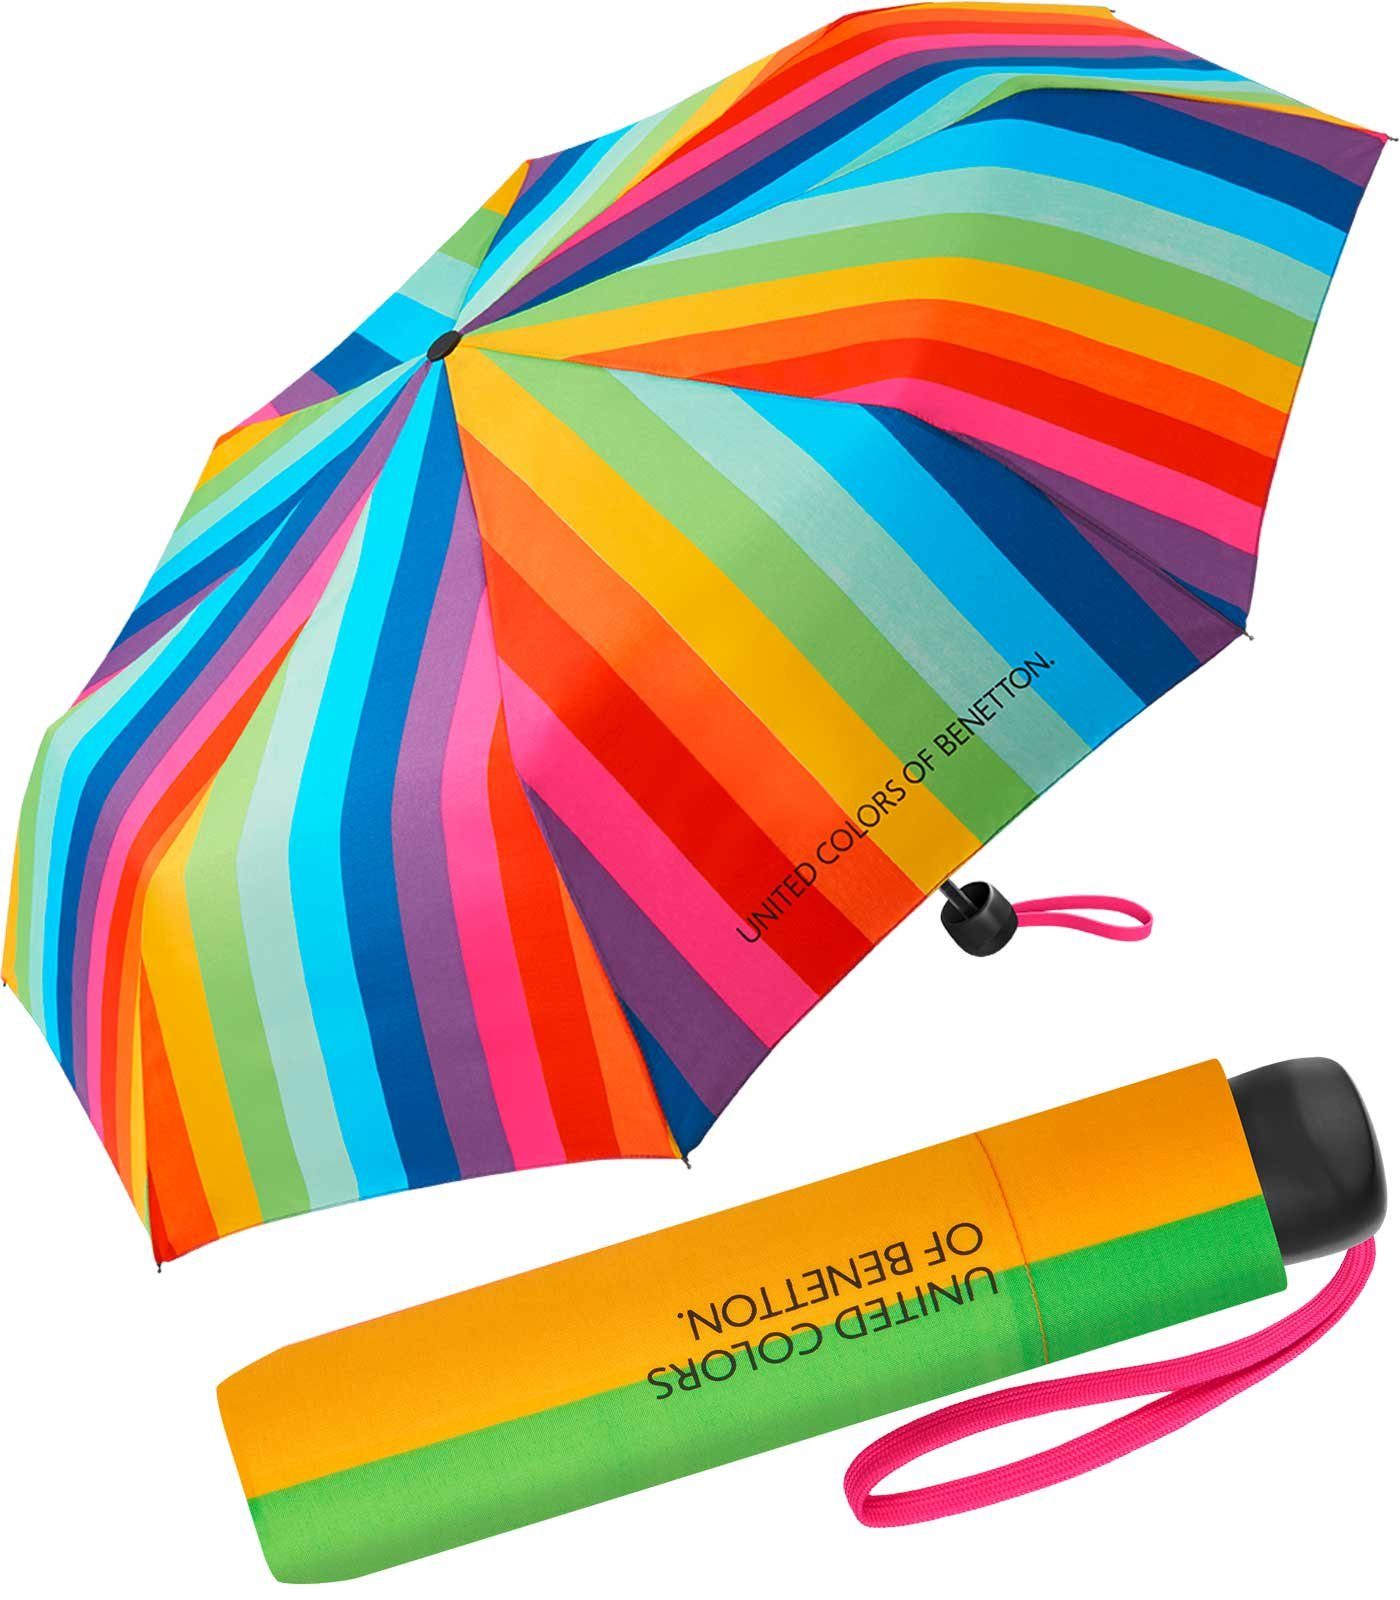 United Colors of Benetton Langregenschirm stabiler, manueller Taschenschirm mit Handöffner, mit buntem Streifen-Muster - Spectral Stripes